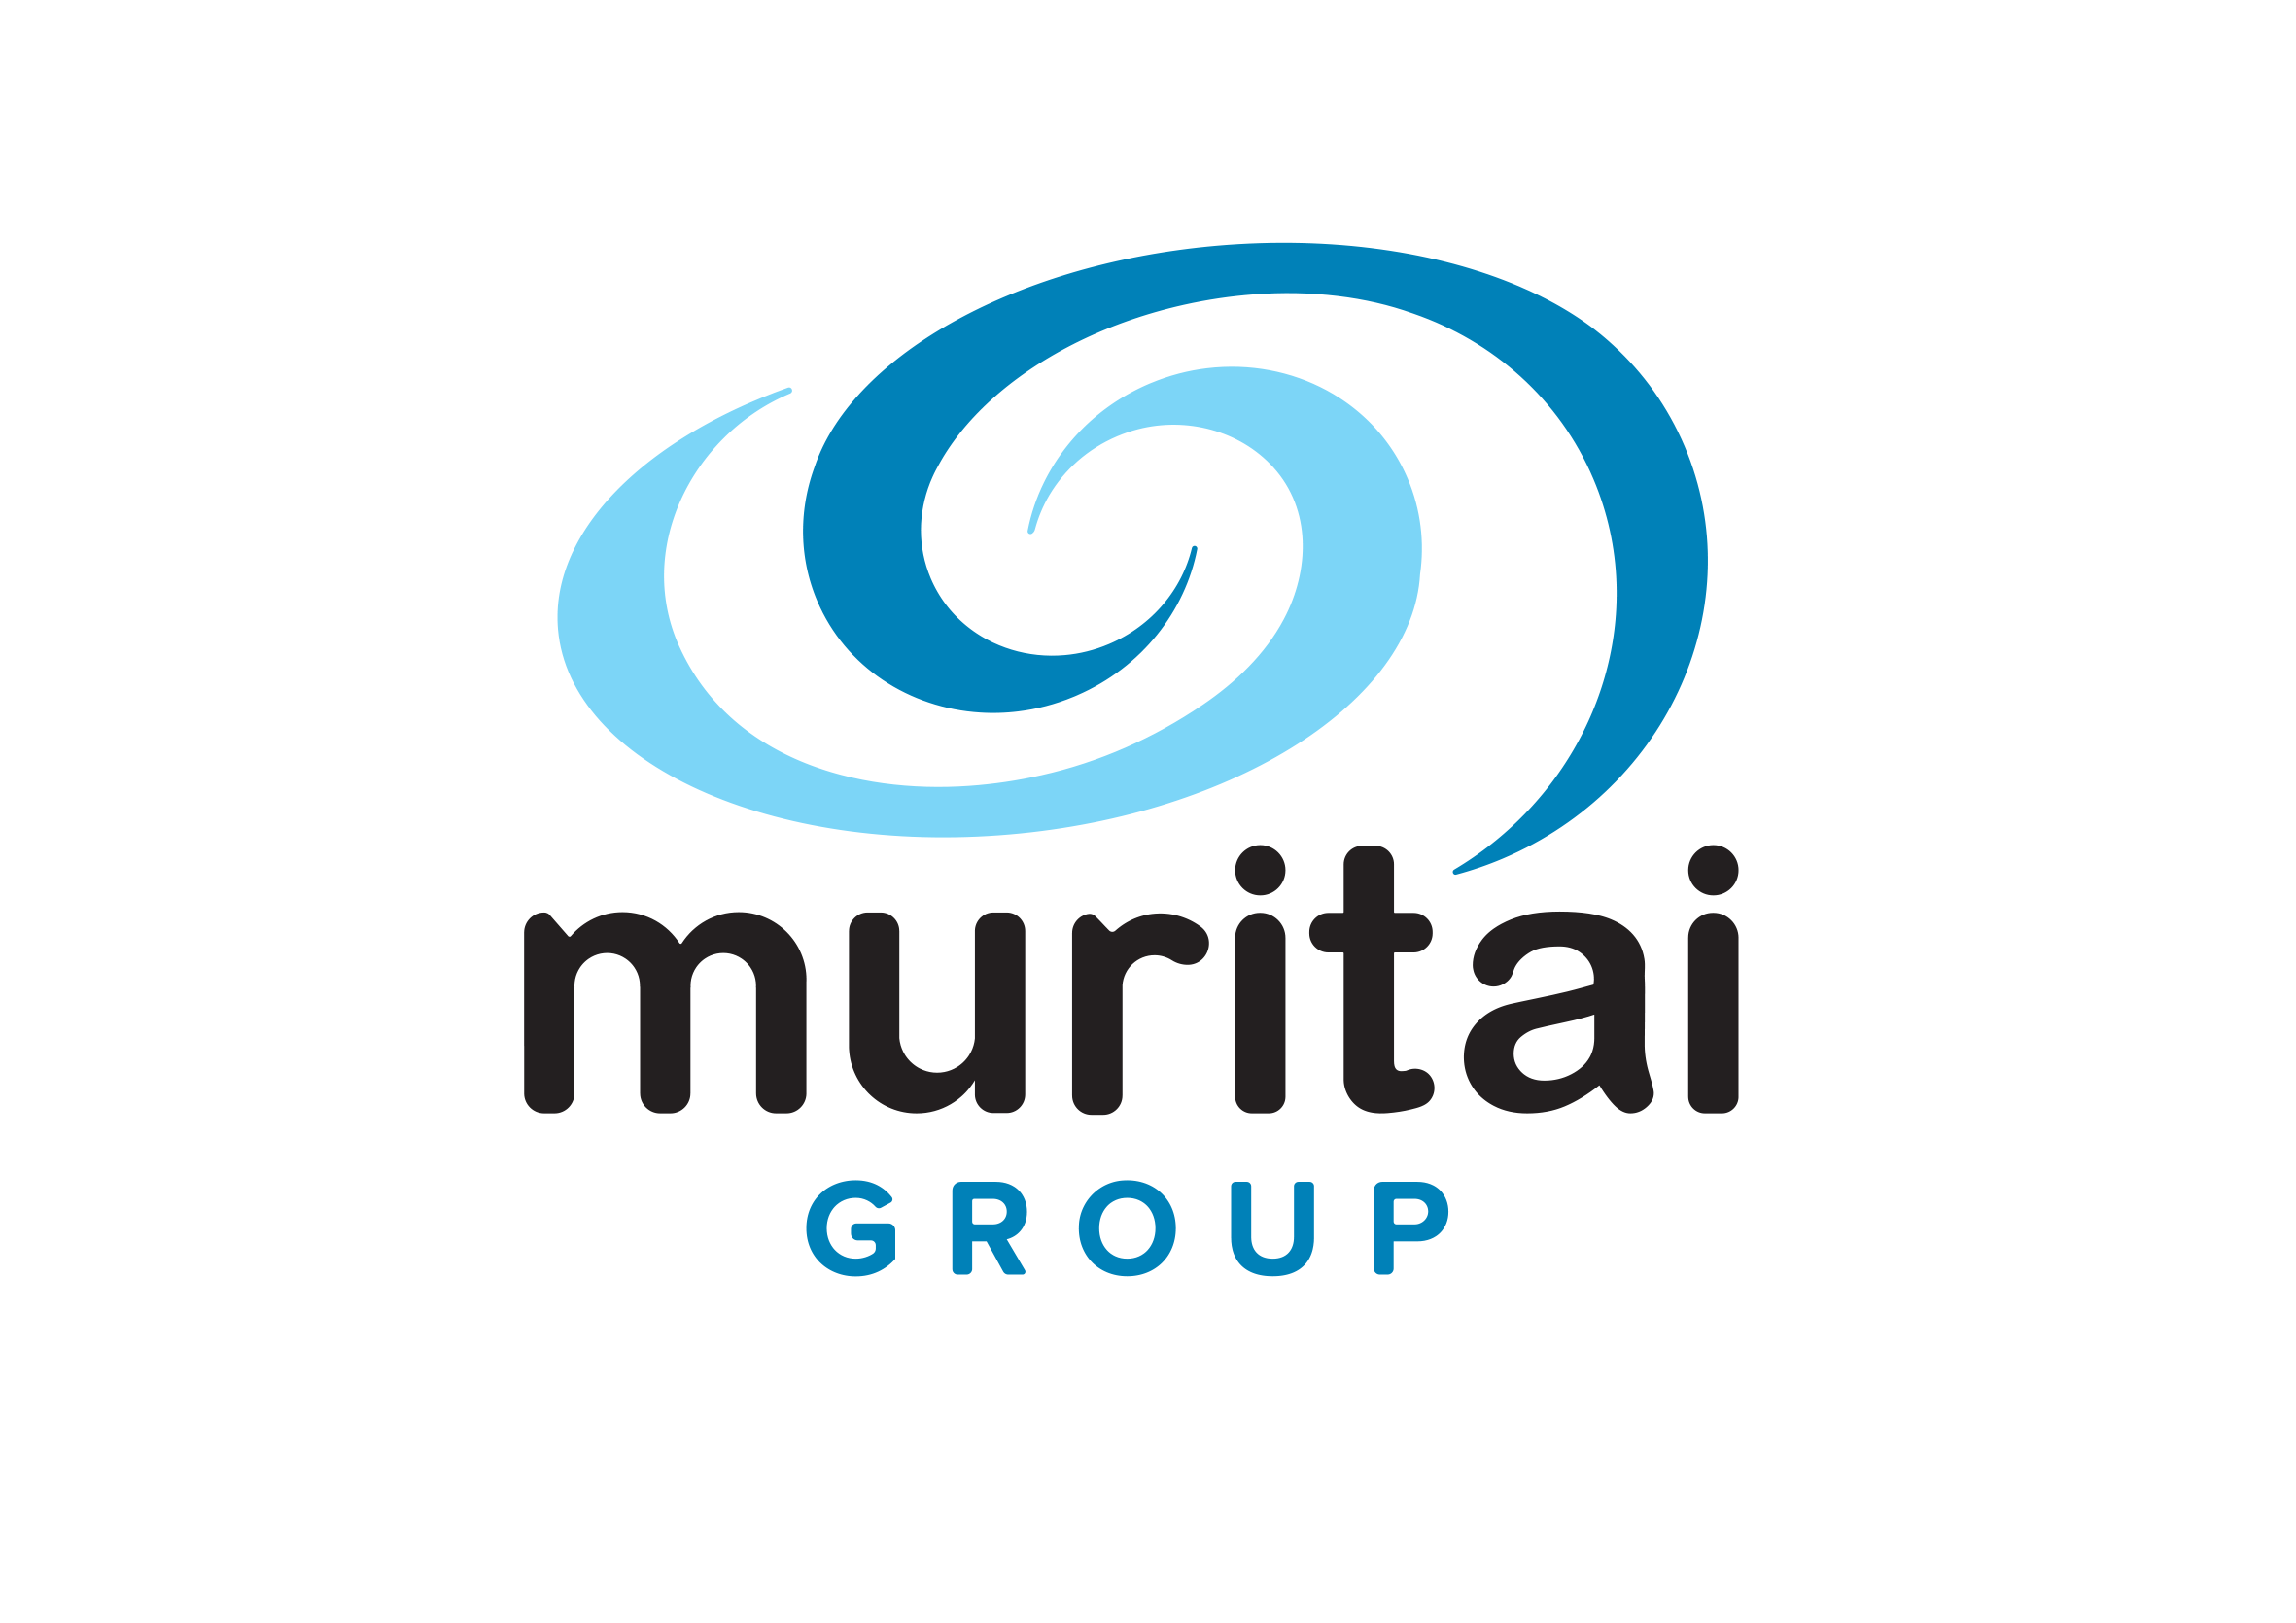 Muritai Group Master logo RGB